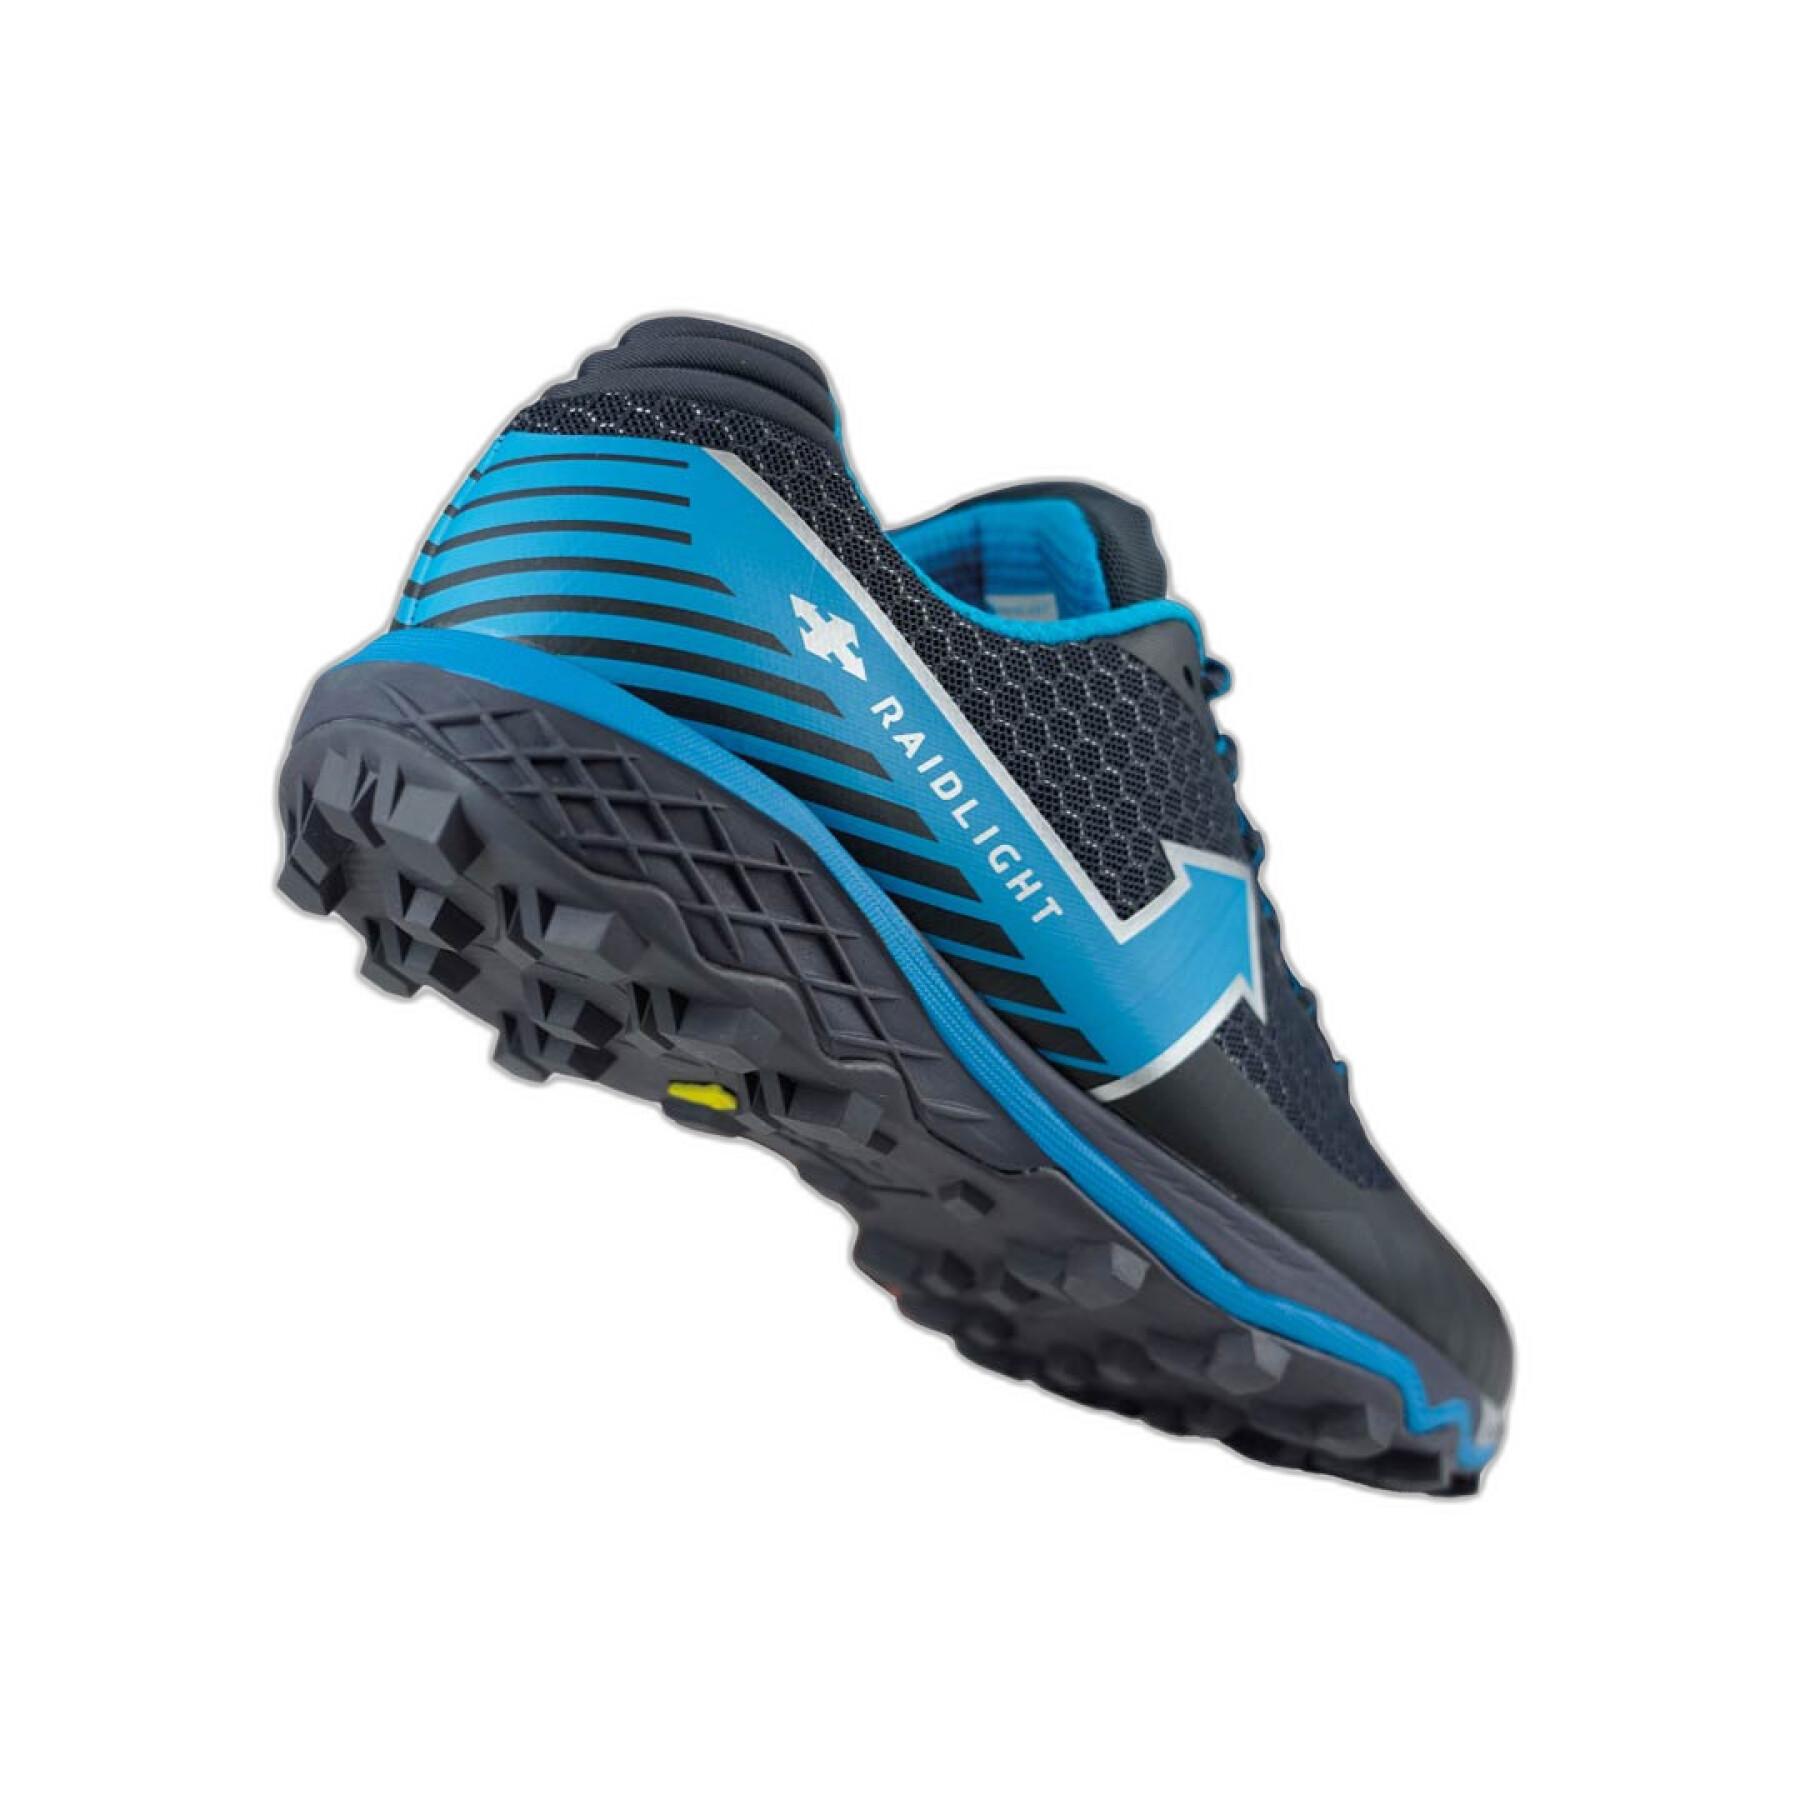 Chaussures de trail RaidLight Dynamic 2.0